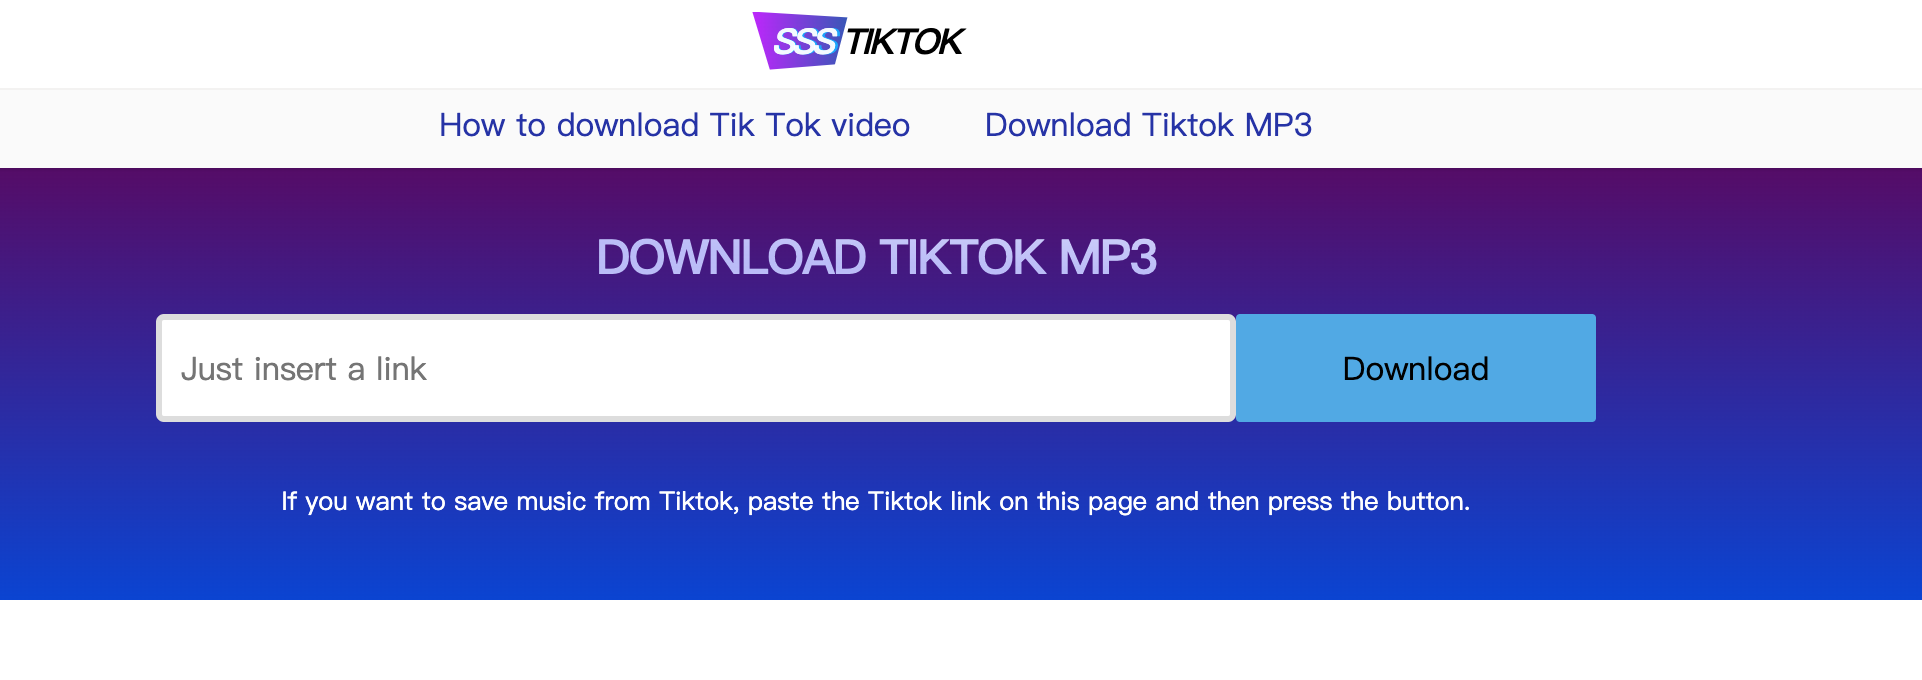 How to Download TikTok Audio Easily | Leawo Tutorial Center